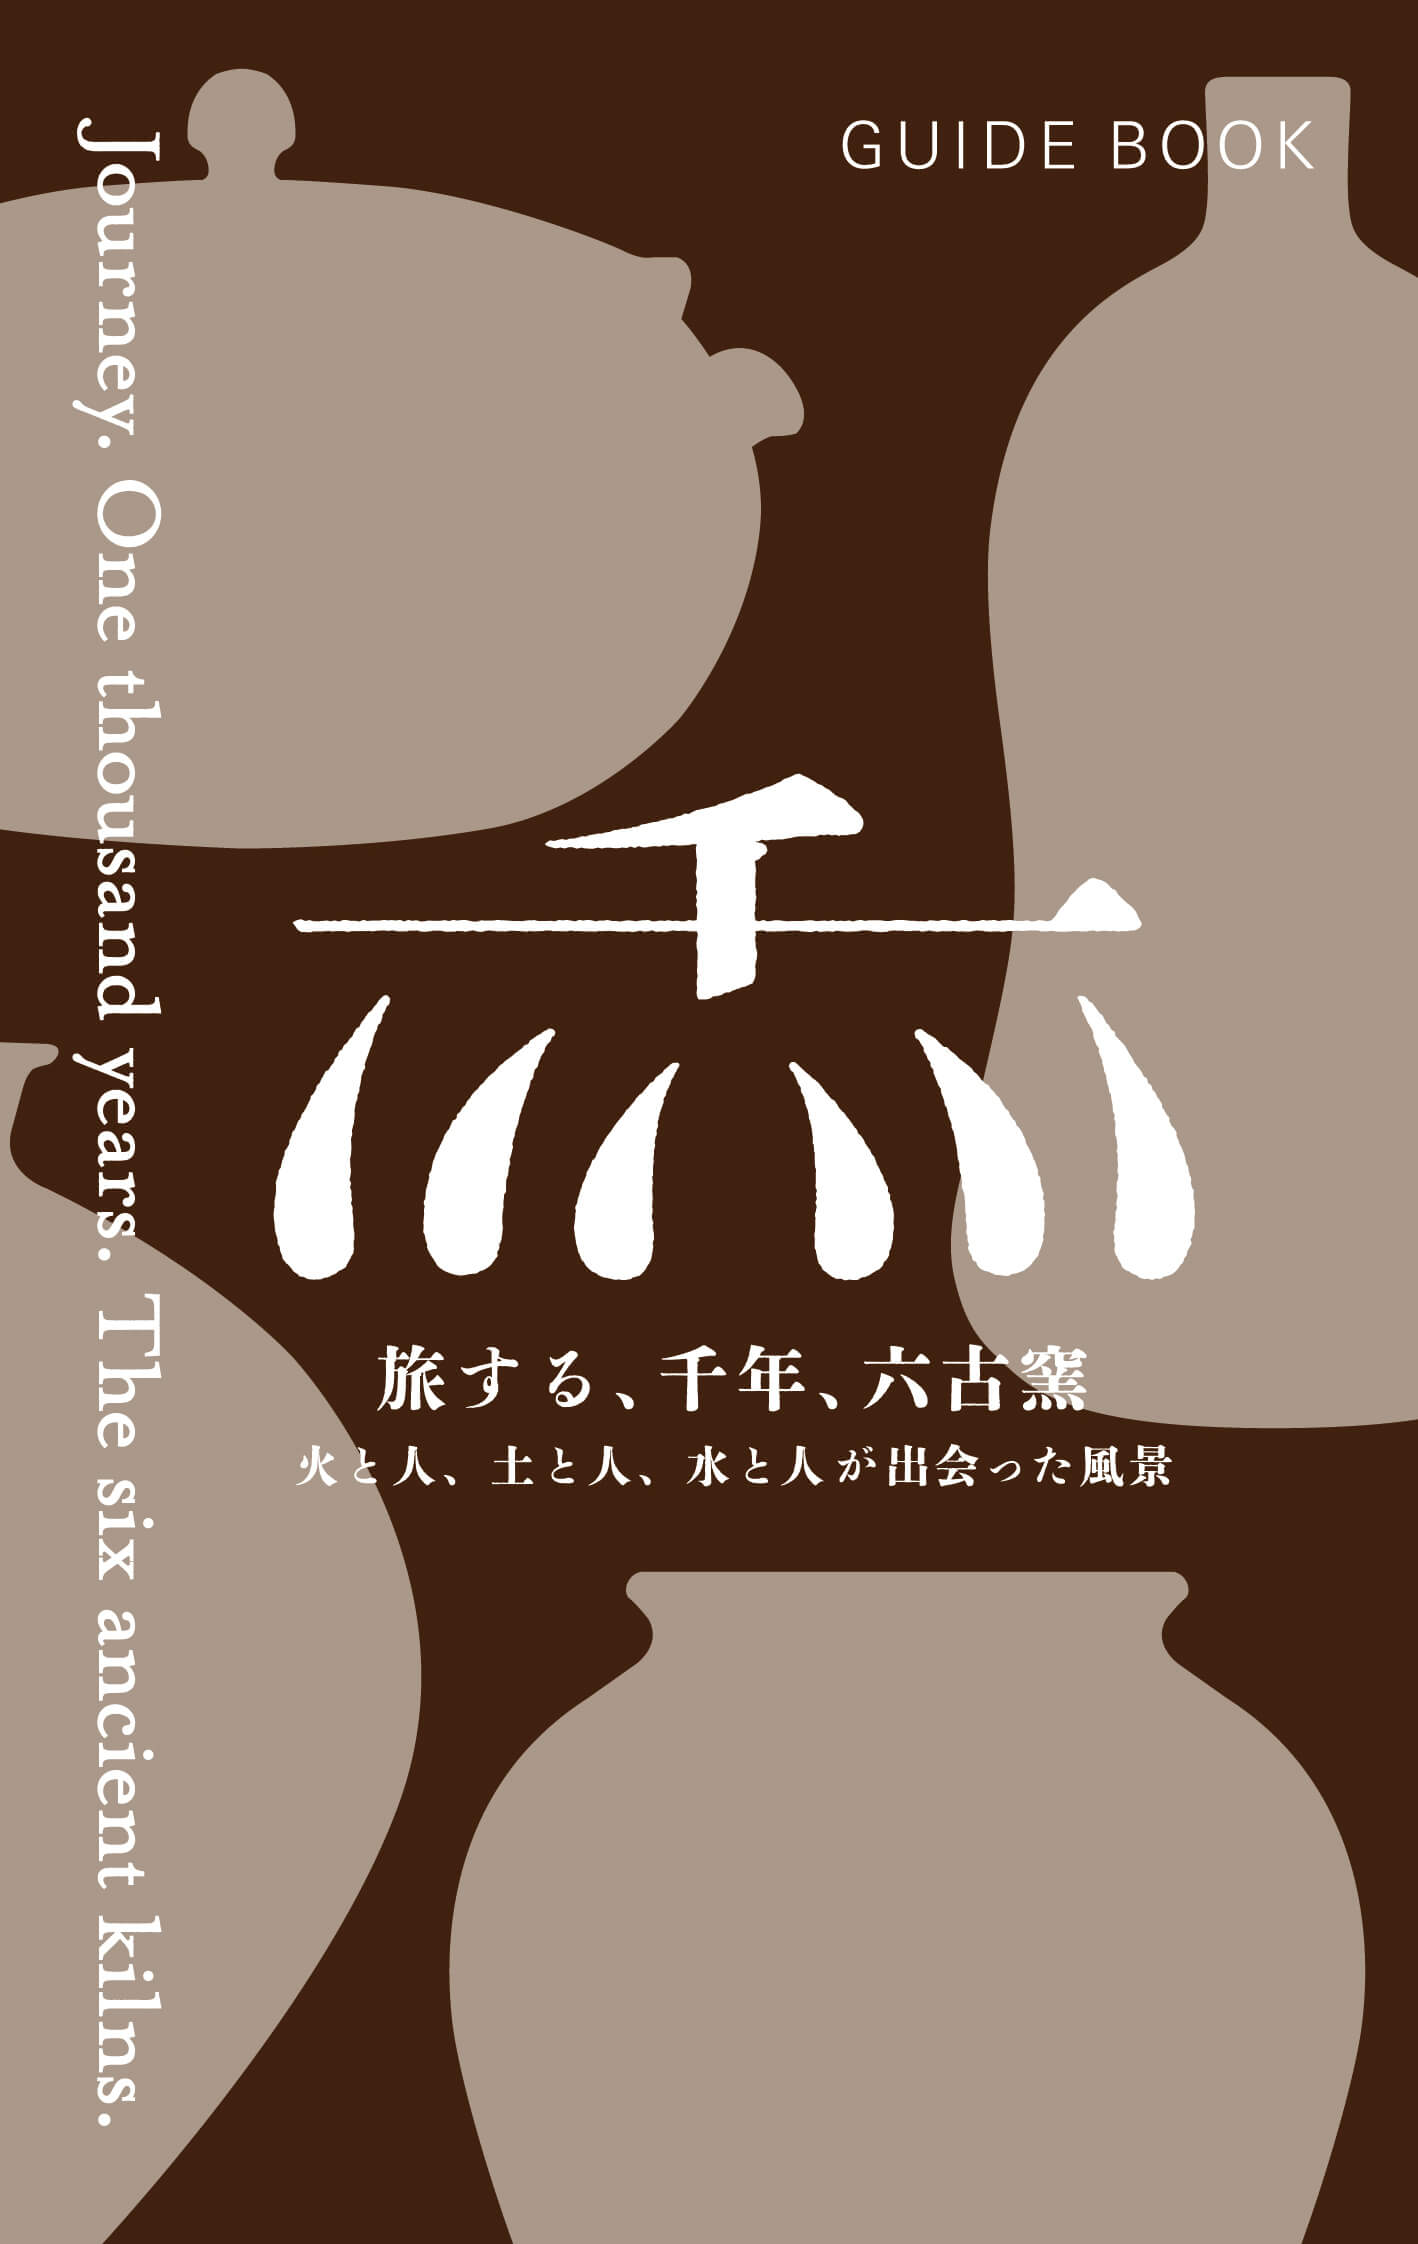 六古窯ライブラリー - 旅する、千年、六古窯 - 日本六古窯 公式Web 